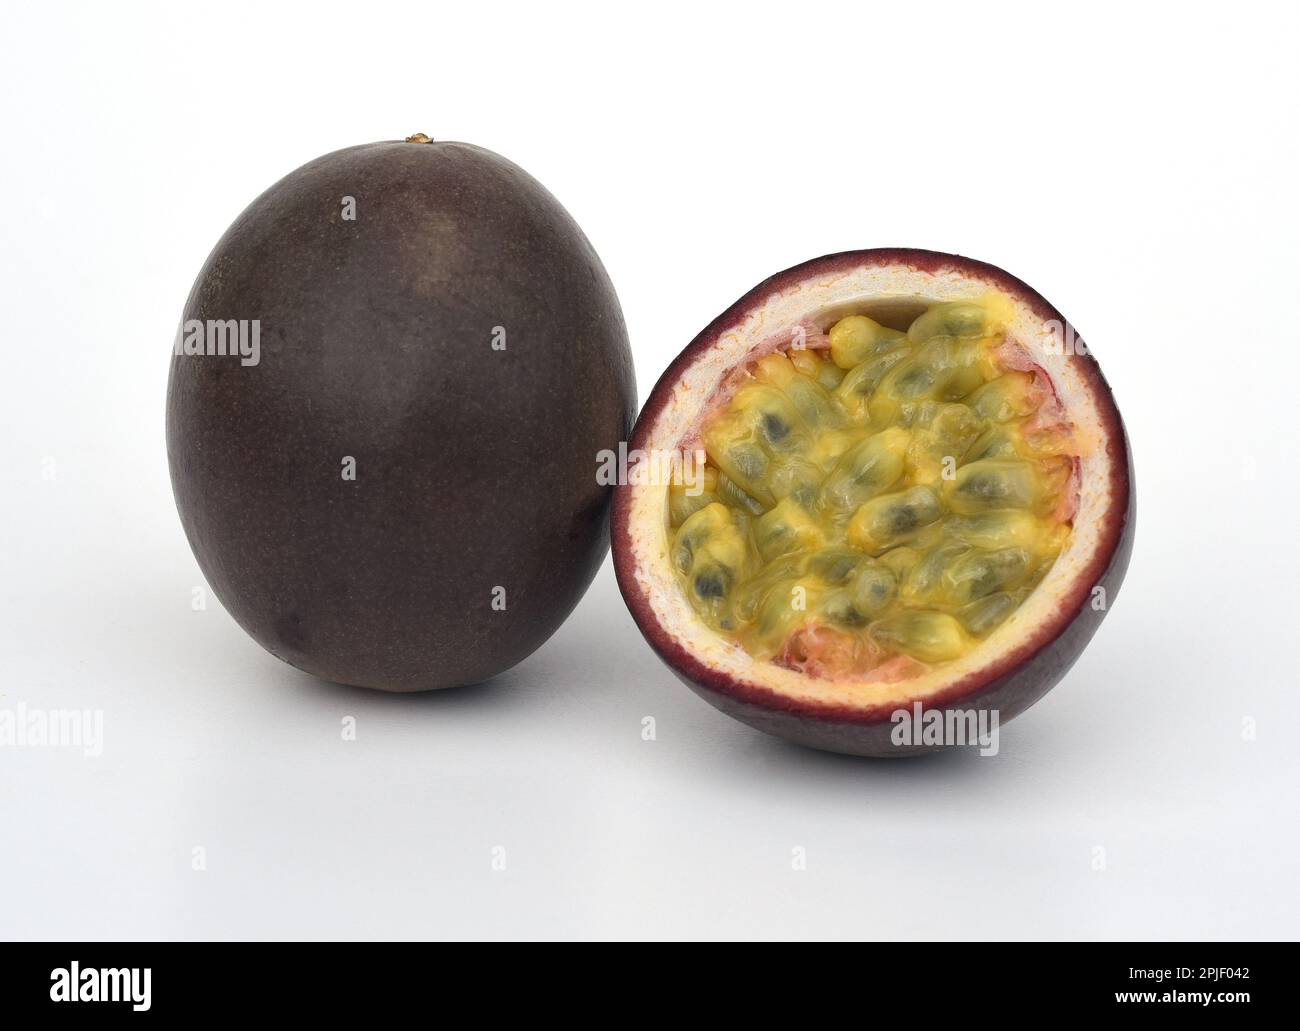 Passionsfrucht, eine aromatische Frucht, stammt urspruenglich aus Mittel- und Suedamerika, wird heute aber weltweit in den Subtropen kultiviert. Passi Foto Stock